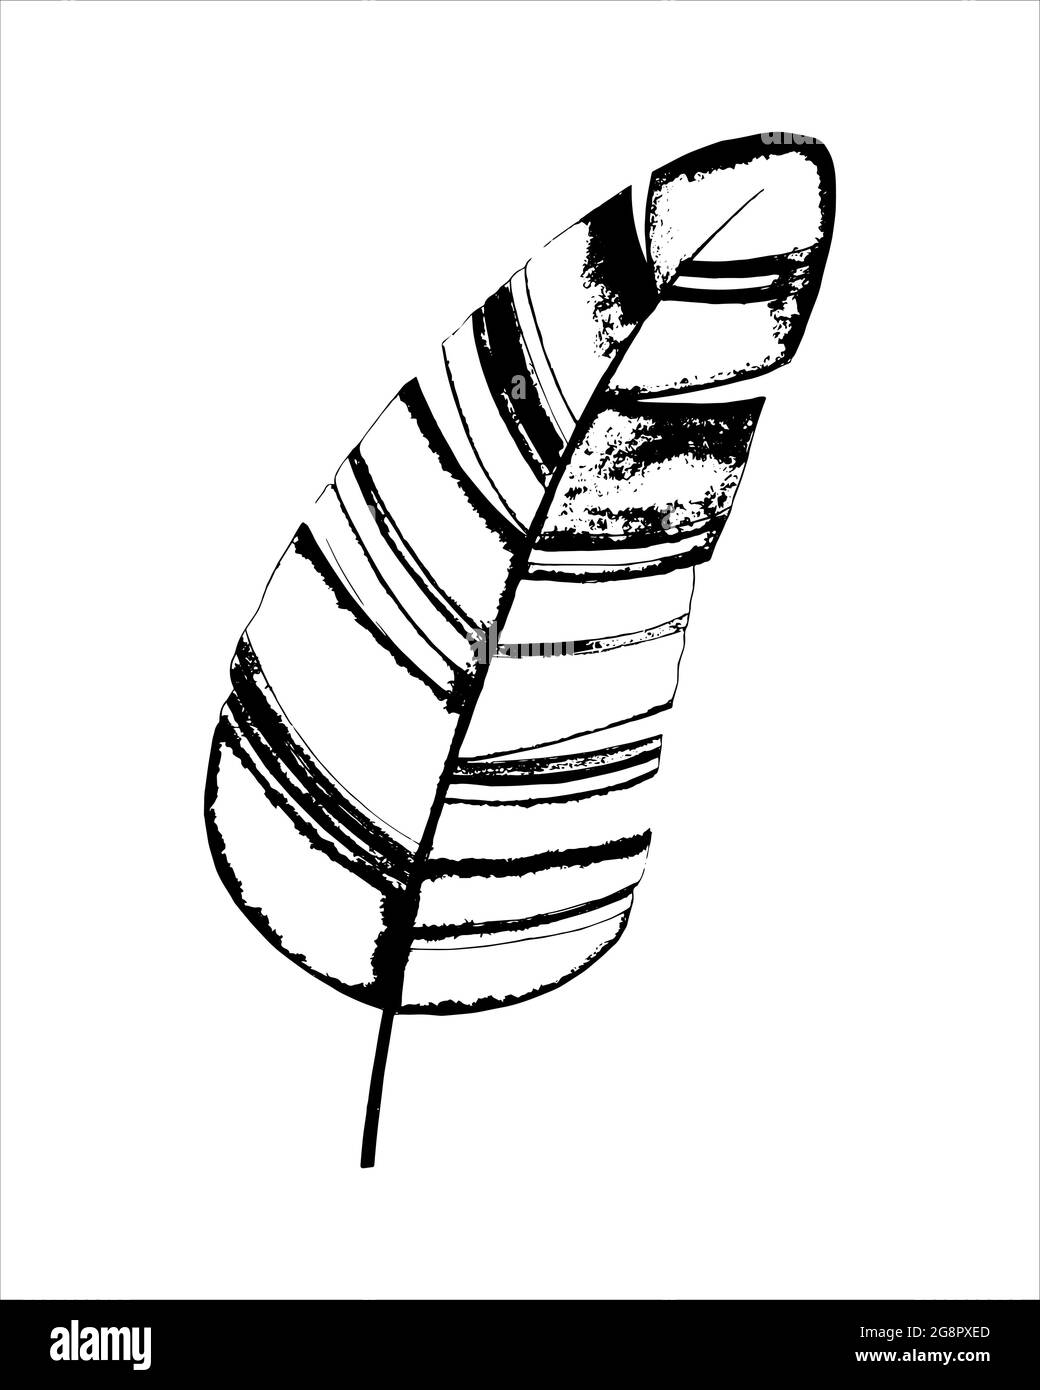 Foglia di banana tropicale, disegno a mano, grafica stilizzata, bianco nero, isolato. Illustrazione vettoriale Illustrazione Vettoriale